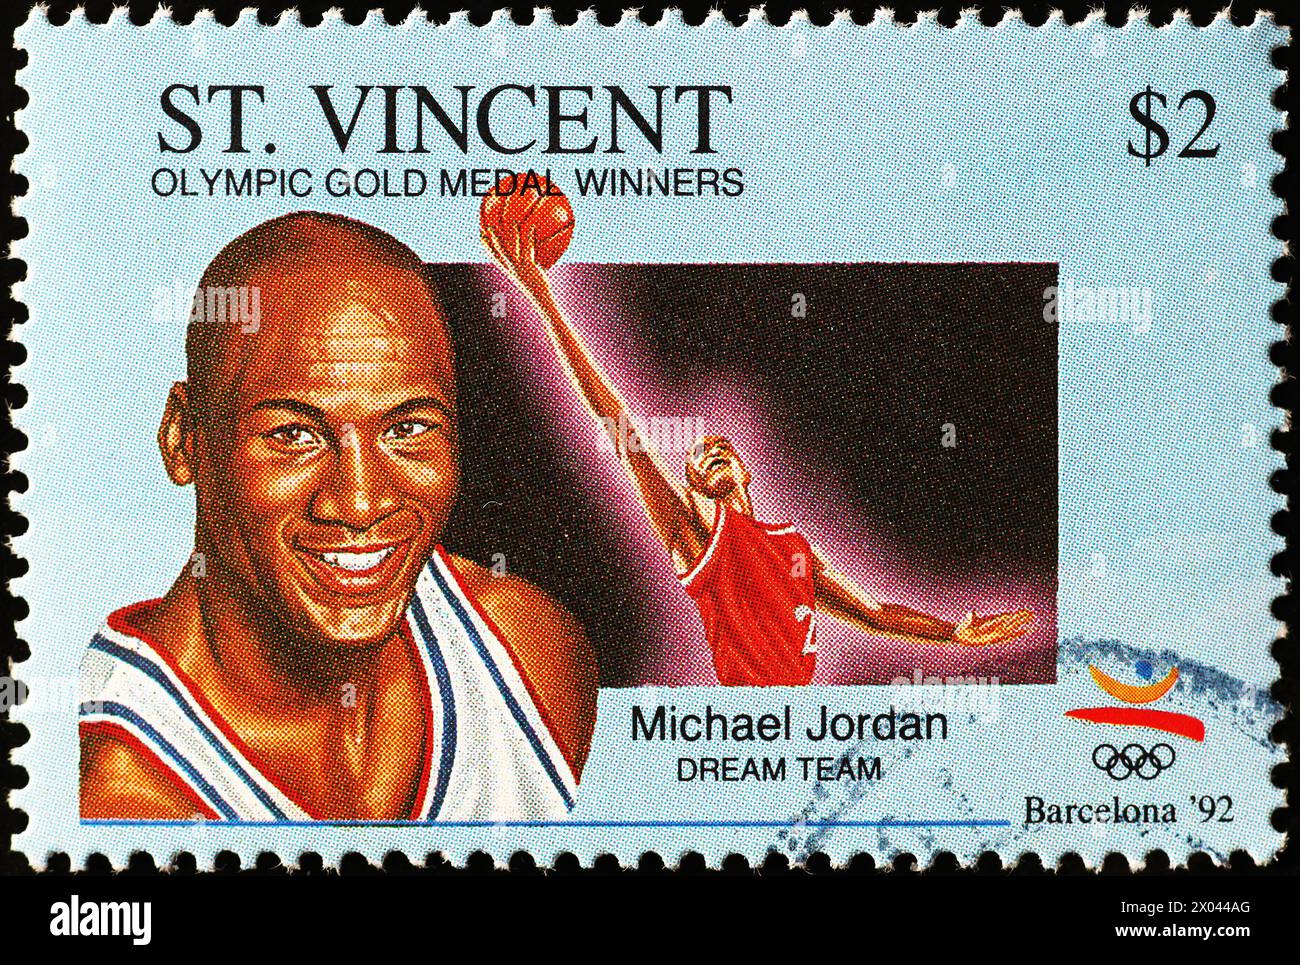 Michael Jordan, membre de l'équipe de rêve, sur timbre-poste Banque D'Images